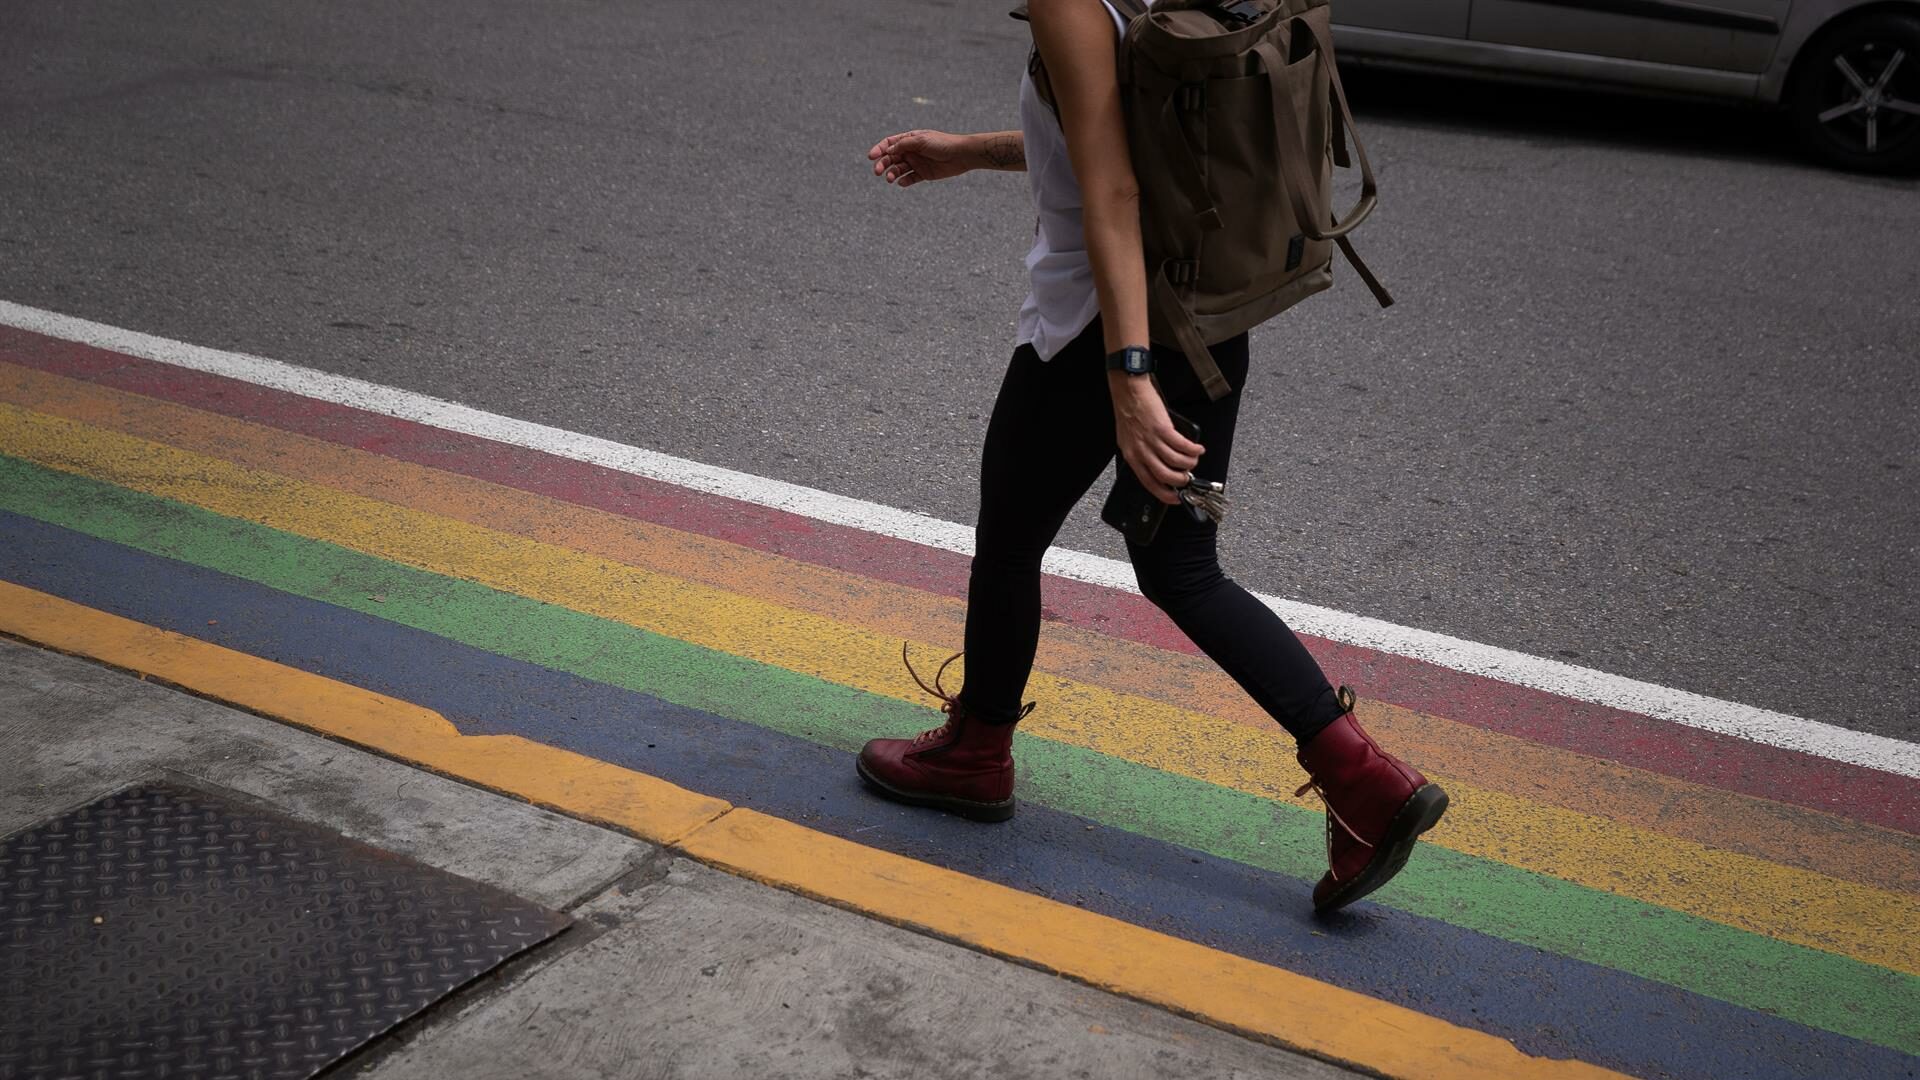 Ciclocarril con los colores de la bandera LGTBI en Venezuela